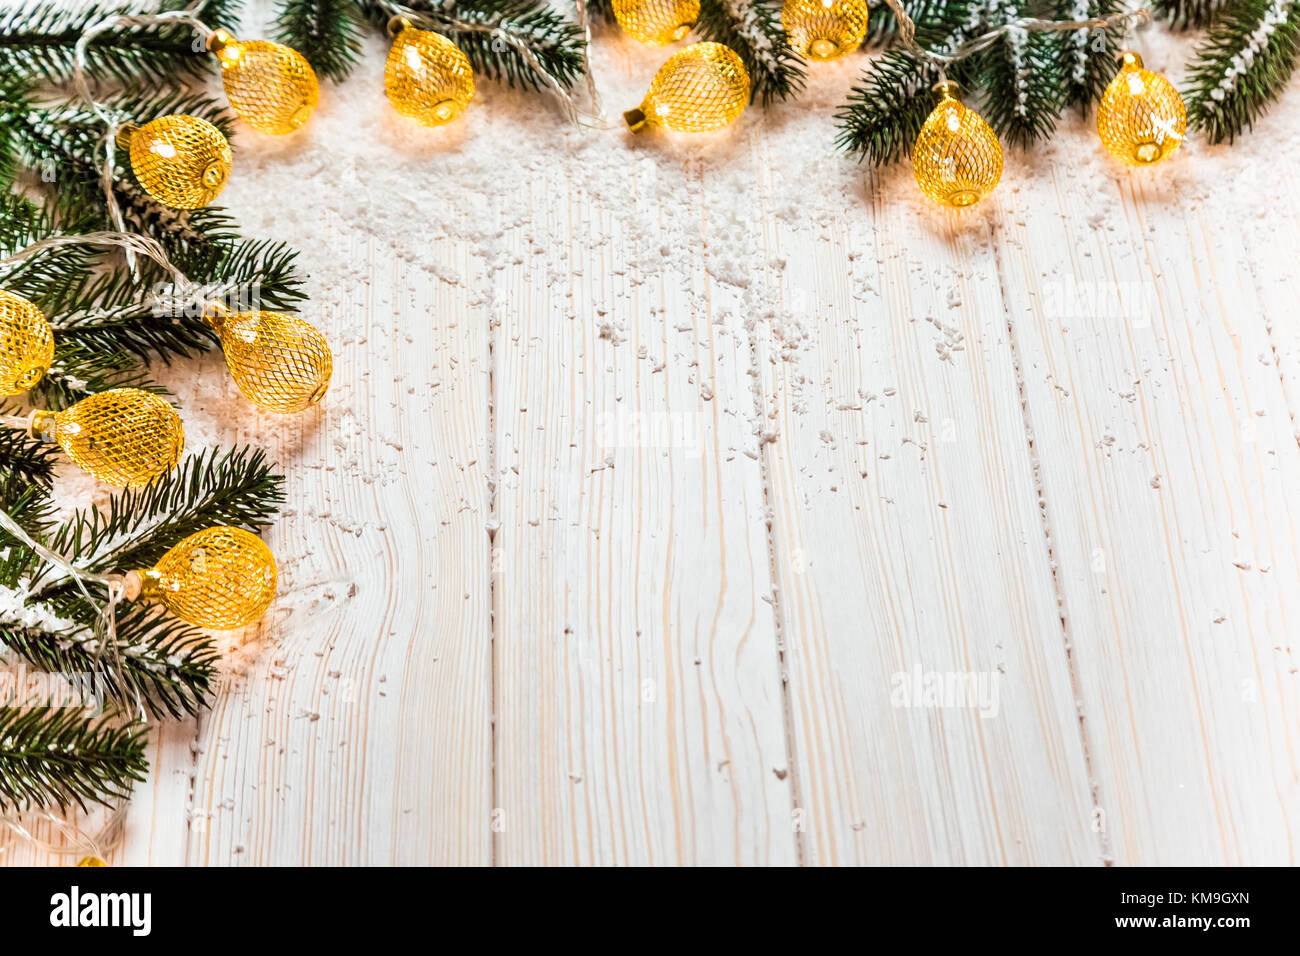 Noël arrière-plan avec une guirlande lumineuse blanche sur table en bois avec les branches de l'arbre de Noël et la neige. Une belle maison de vacances idée de wint Banque D'Images